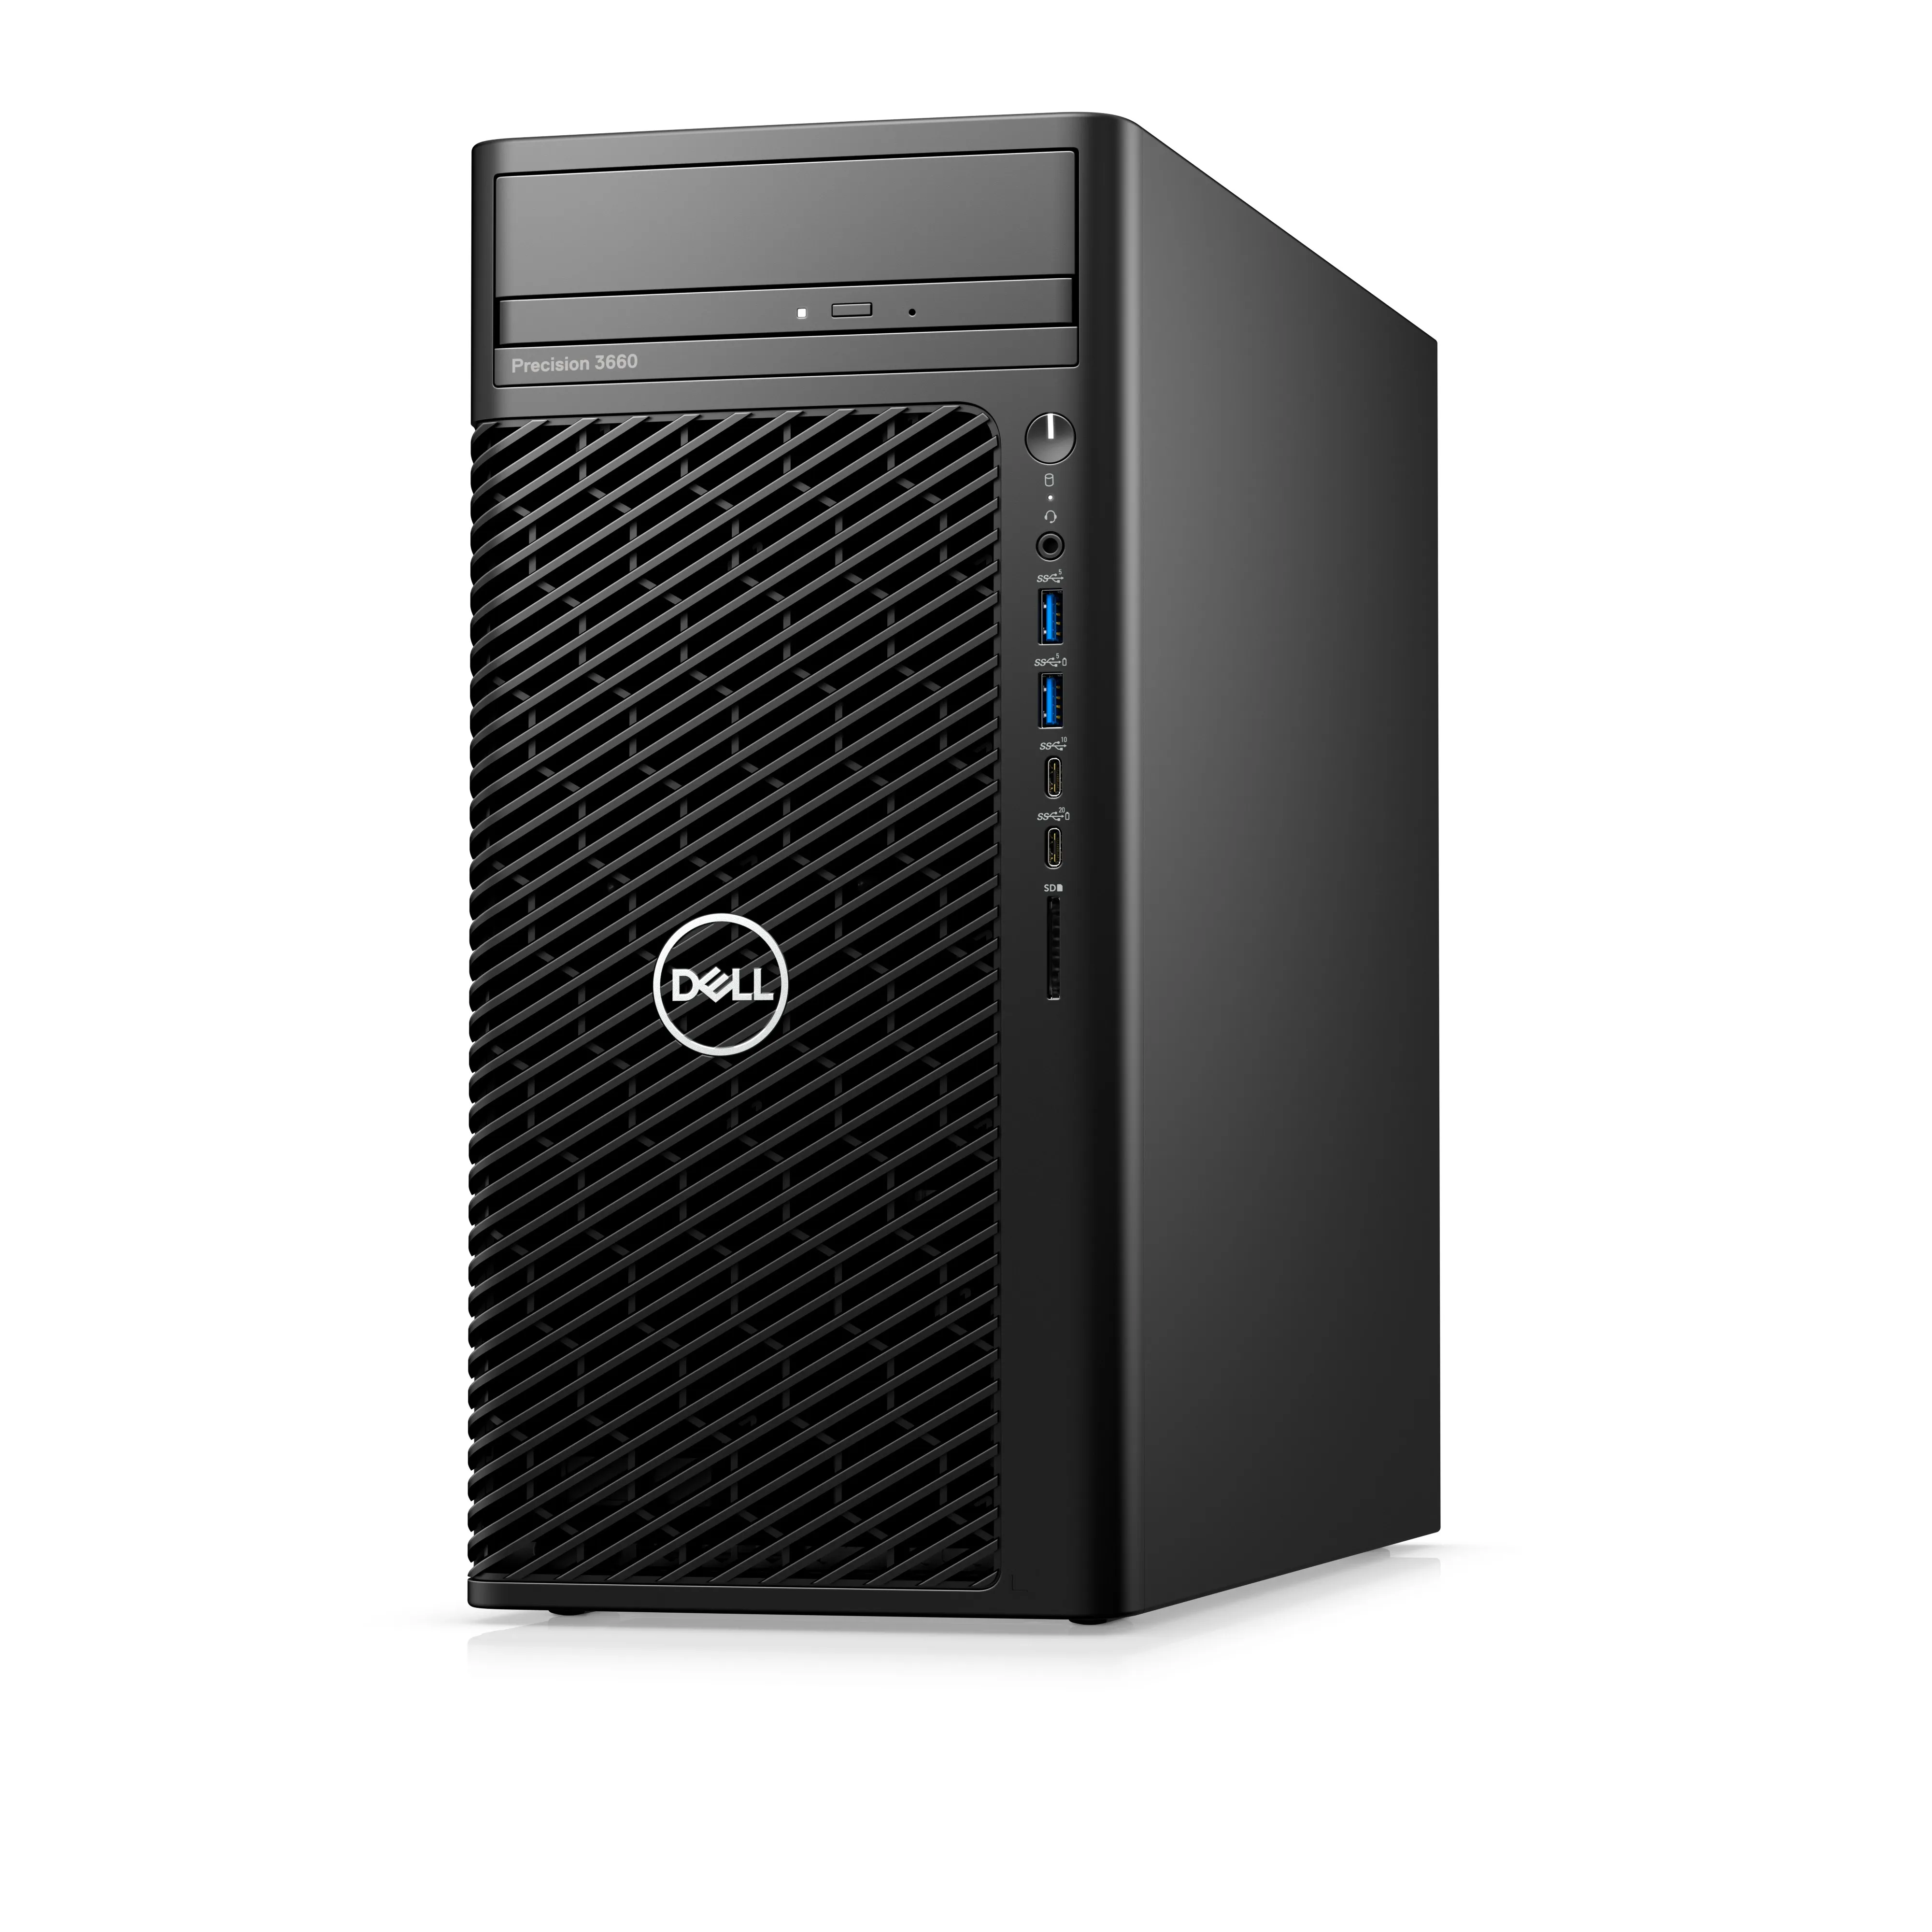 Dell Precision 3660 Tower - i7 12700K - 32GB RAM - 512GB SSD - Win 10 Pro